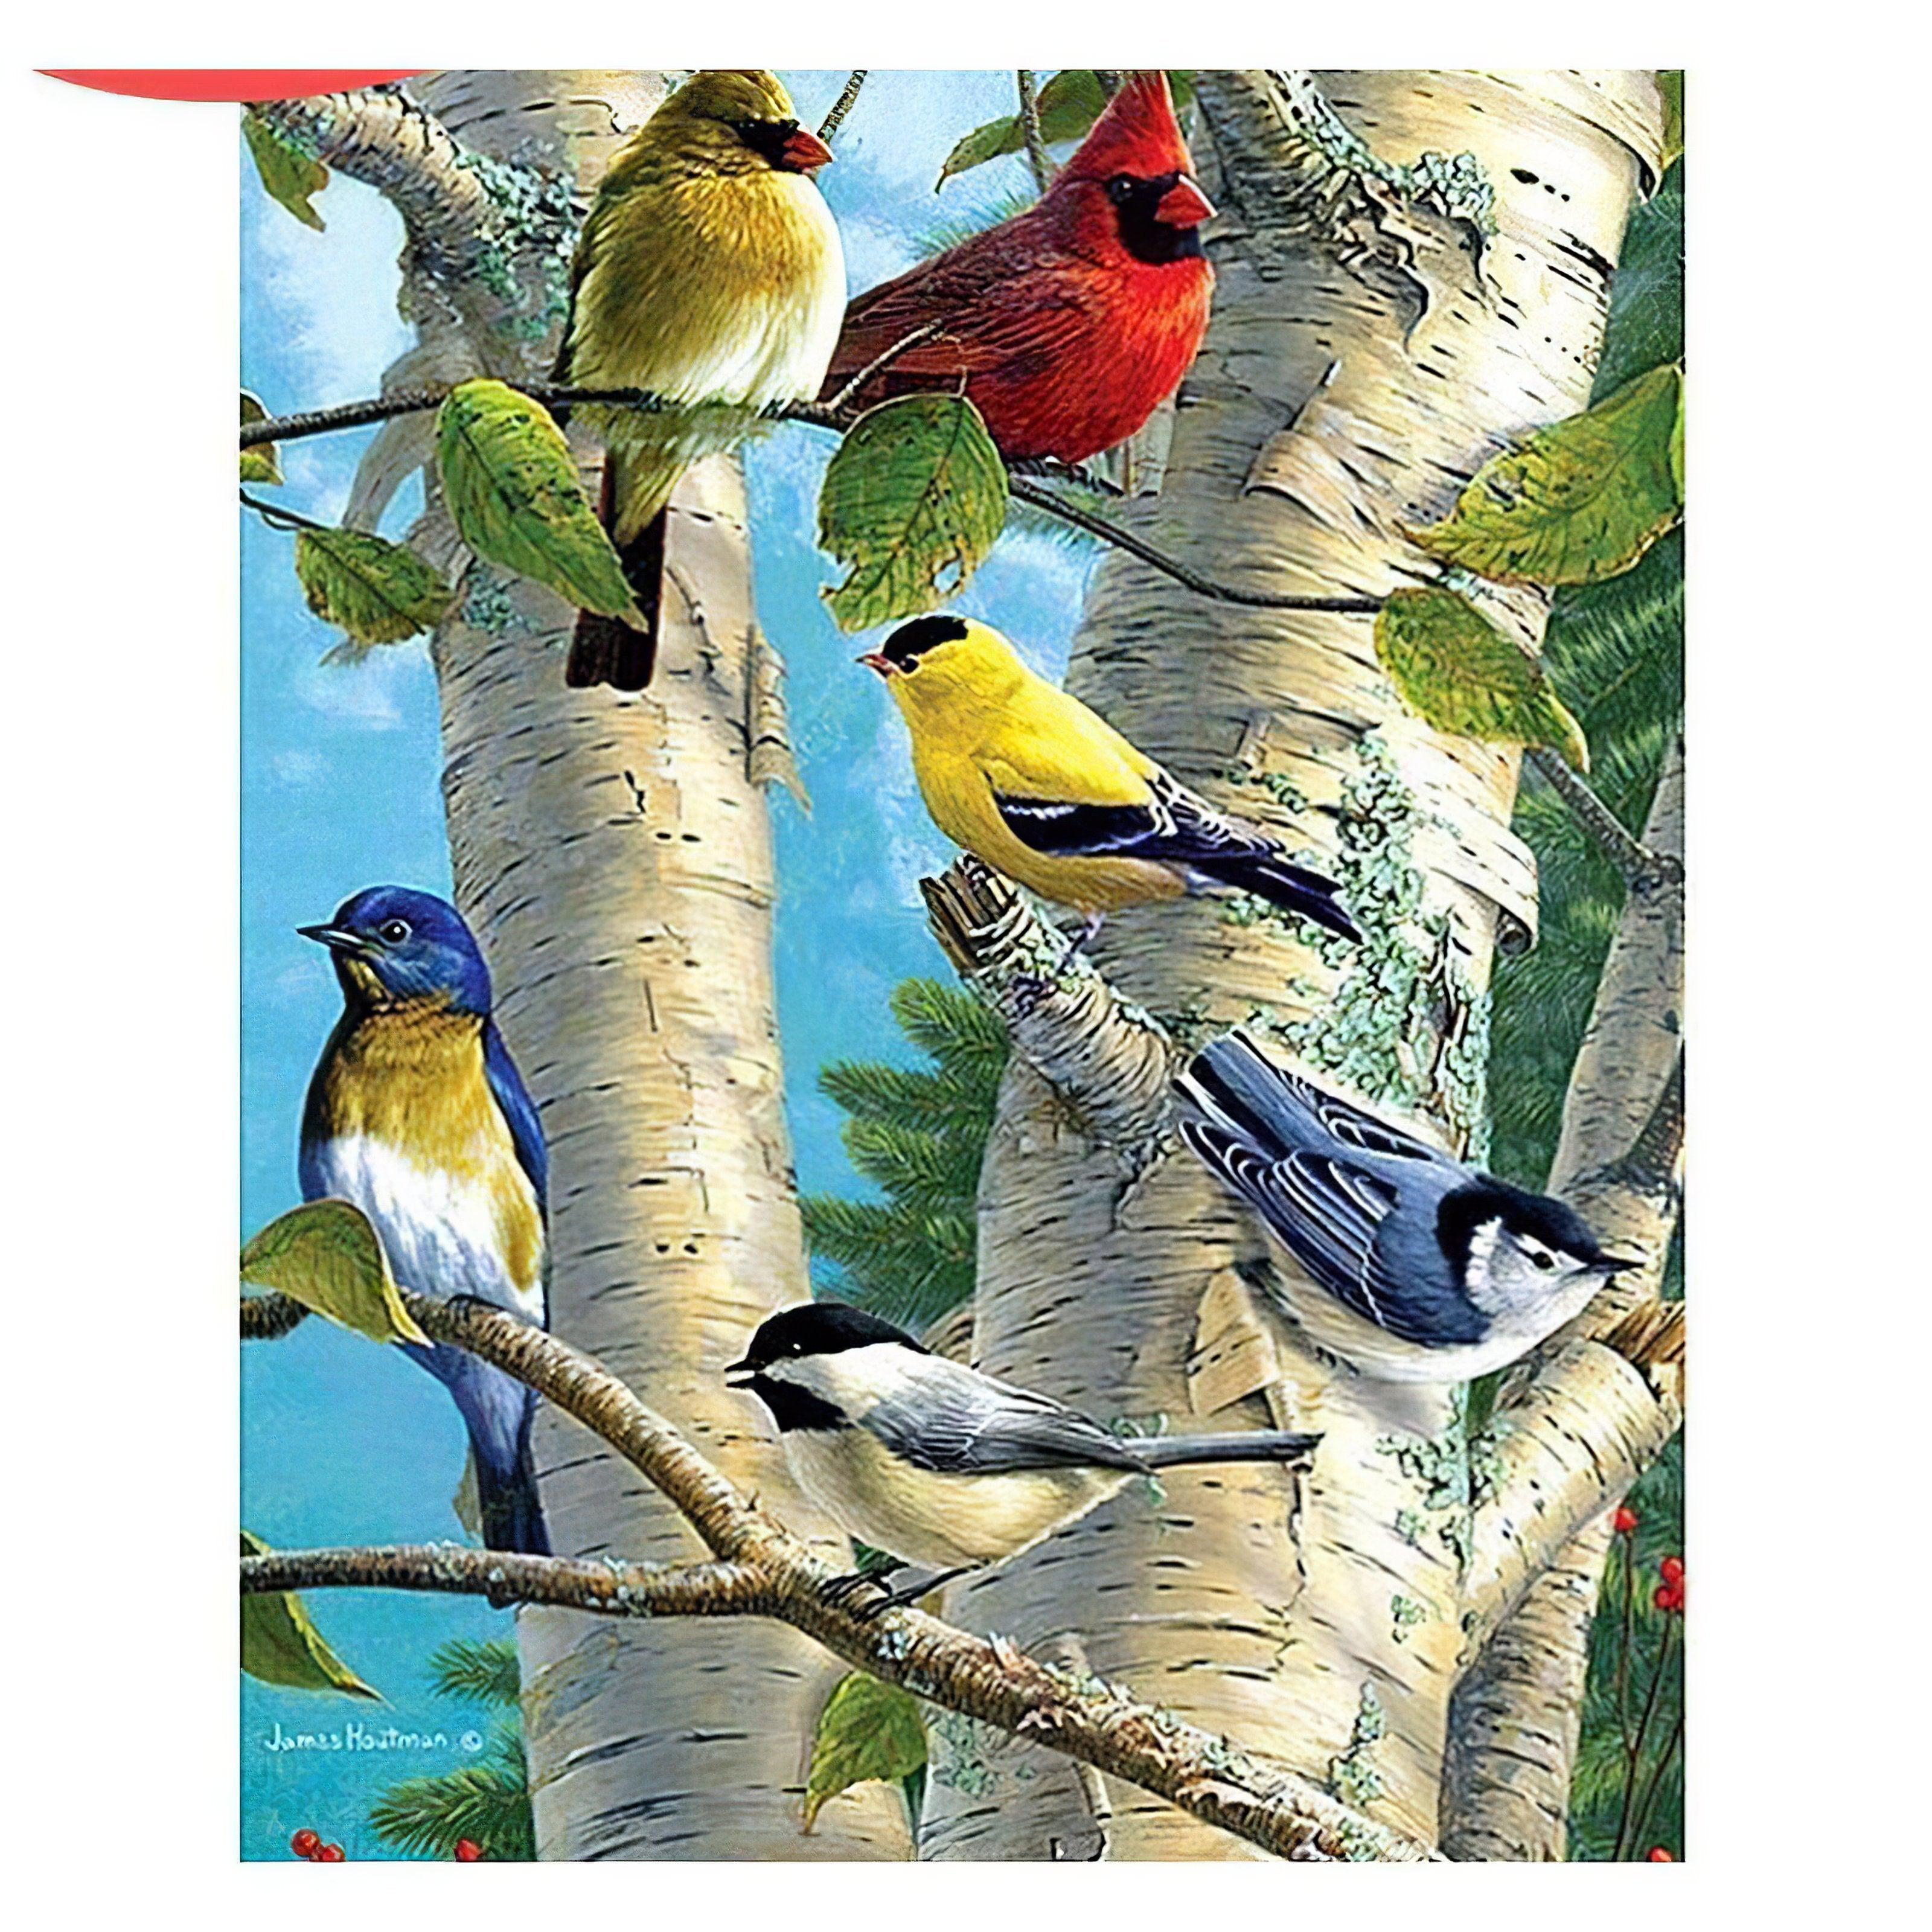 Harmony in avian life, a tree vibrant with birdsong. Birds In The Tree - Diamondartlove